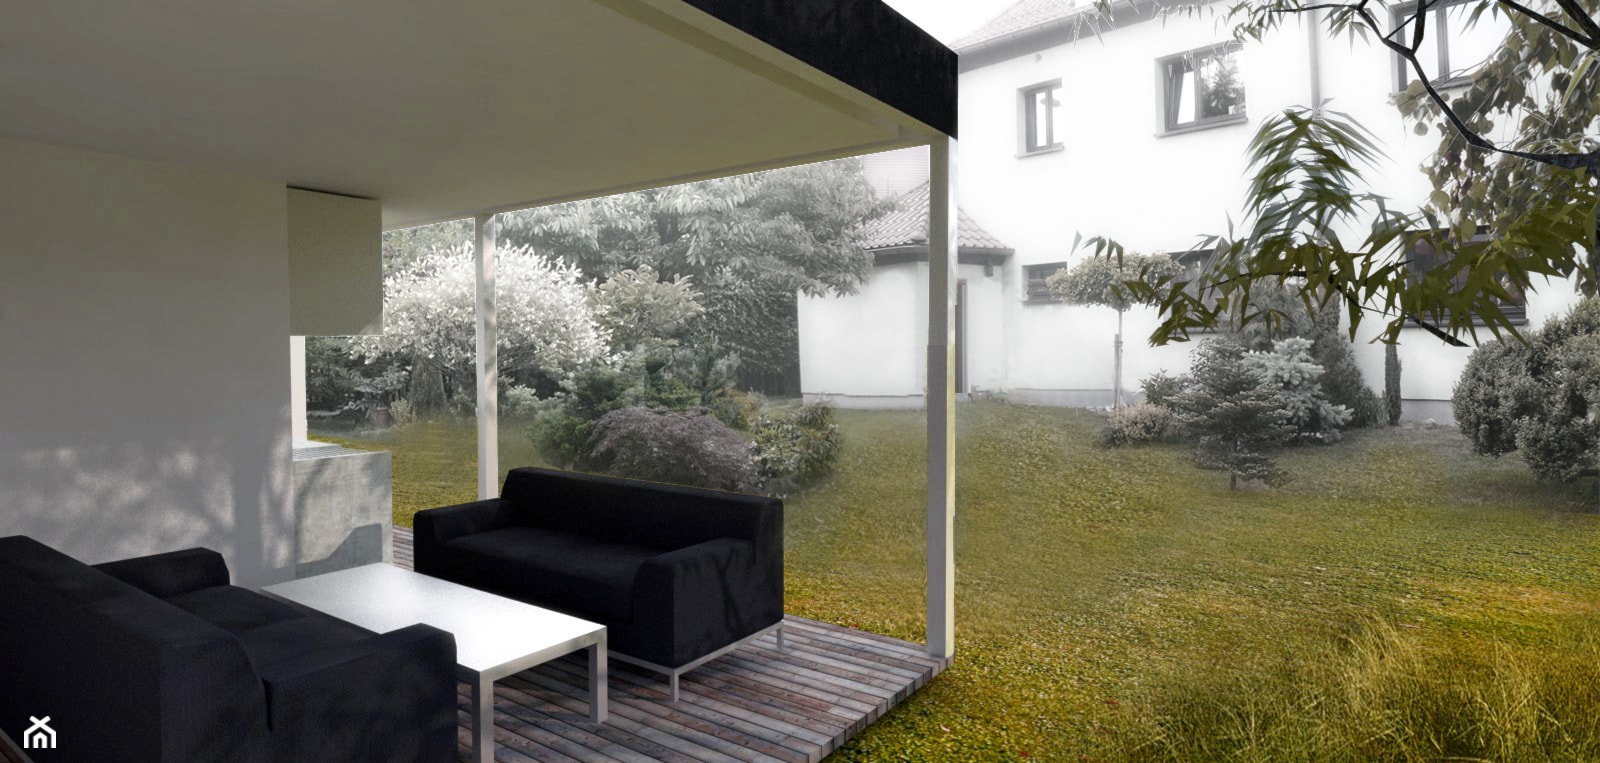 Pawilon w ogrodzie - Domy, styl minimalistyczny - zdjęcie od INOSTUDIO architekci - Homebook